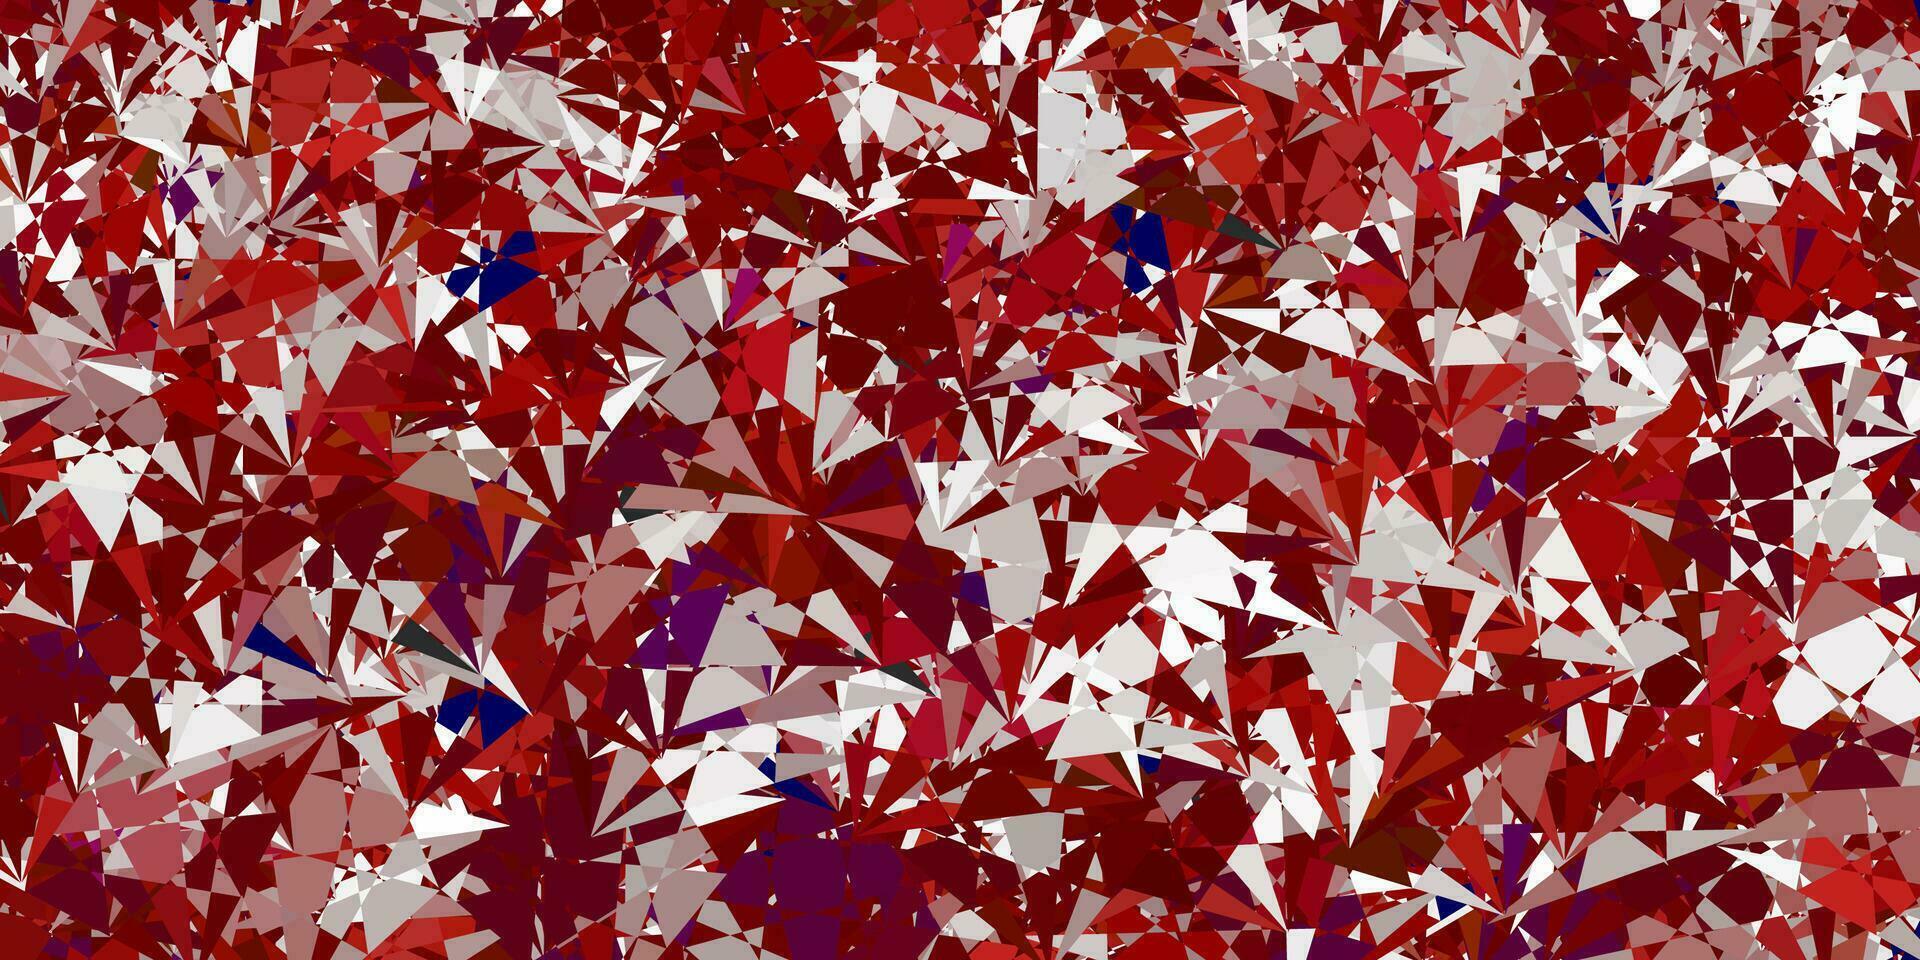 sfondo vettoriale rosso chiaro con forme poligonali.